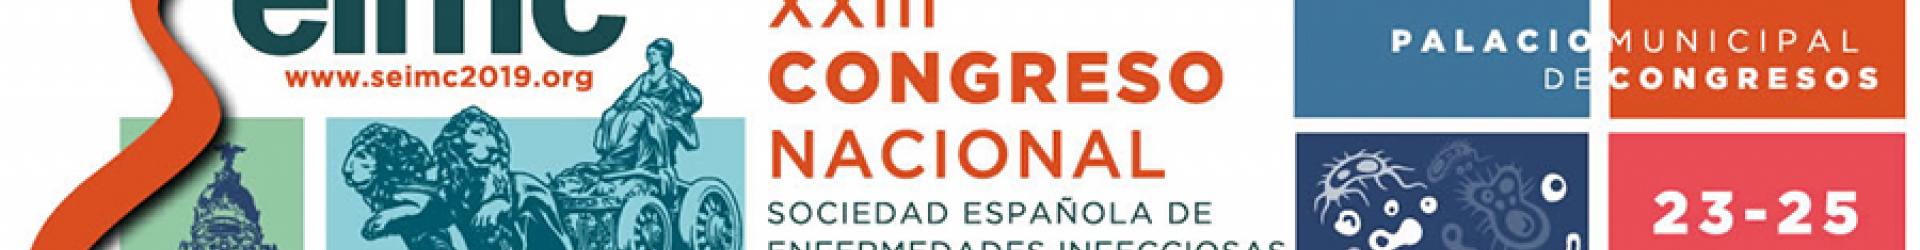 XXIII Congreso Sociedad Española de Enfermedades Infecciosas y Microbiología Clínica